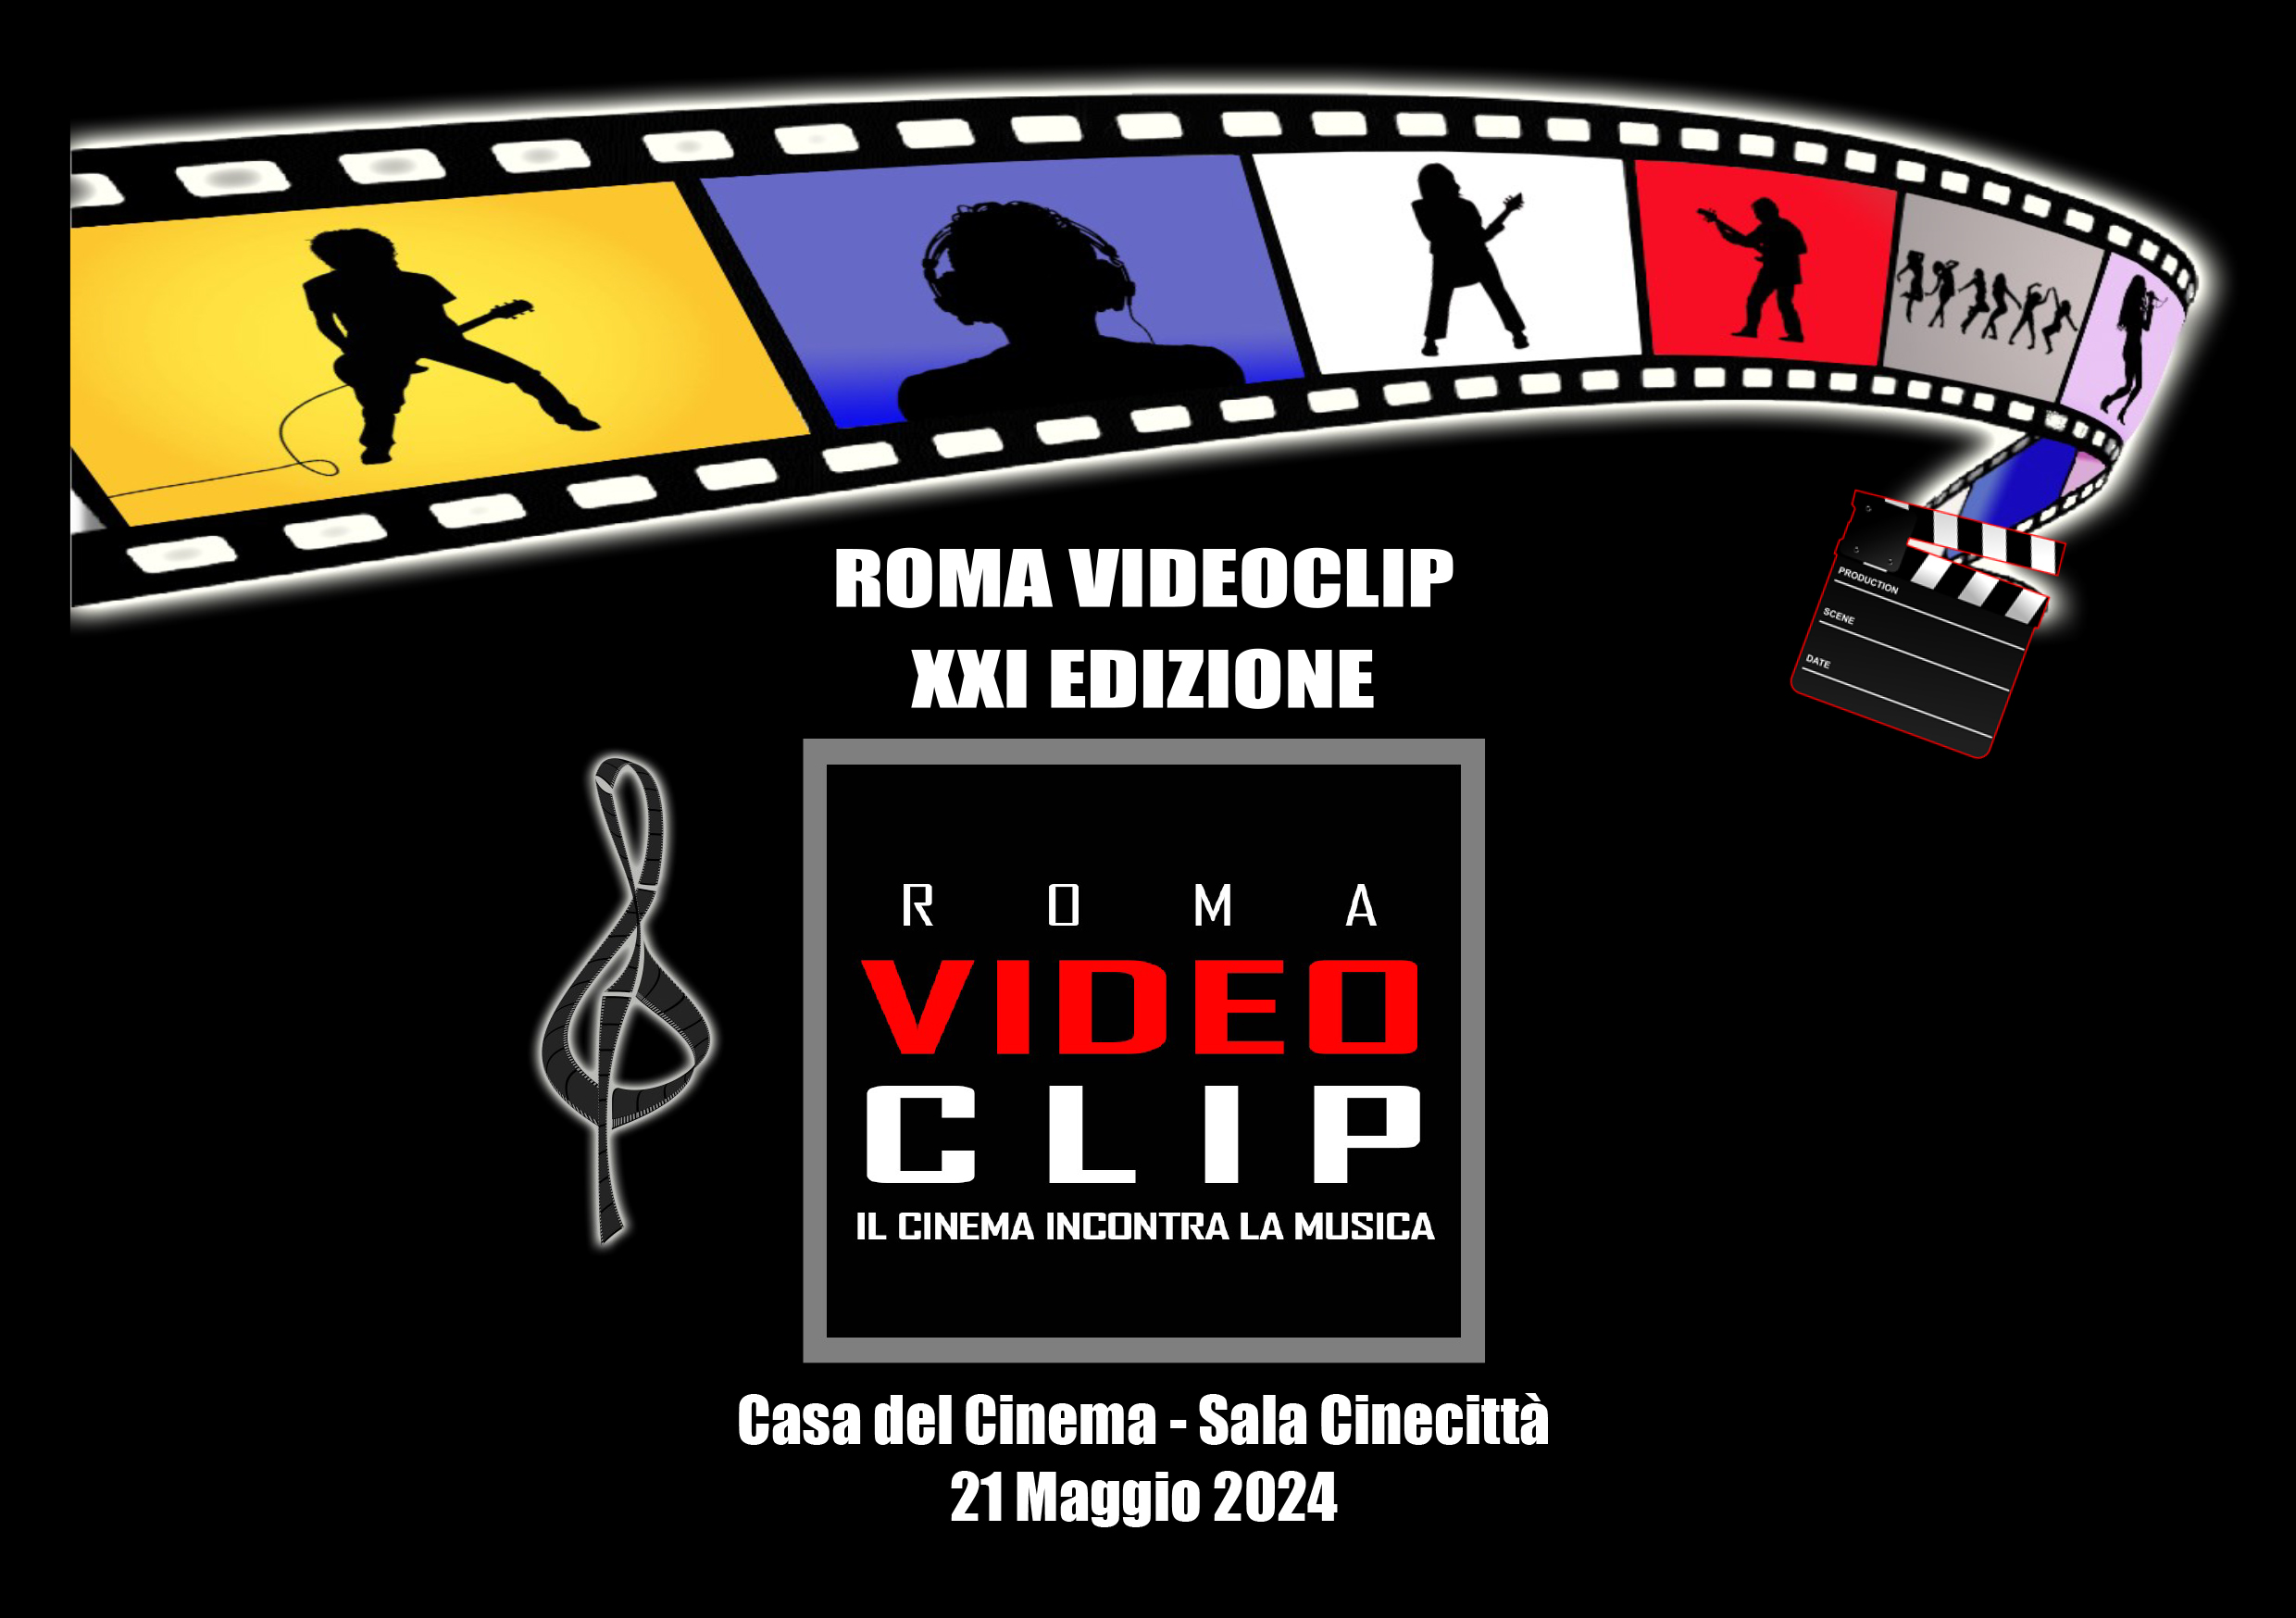 XXI Edizione del Premio Roma Videoclip-il cinema incontra la musica